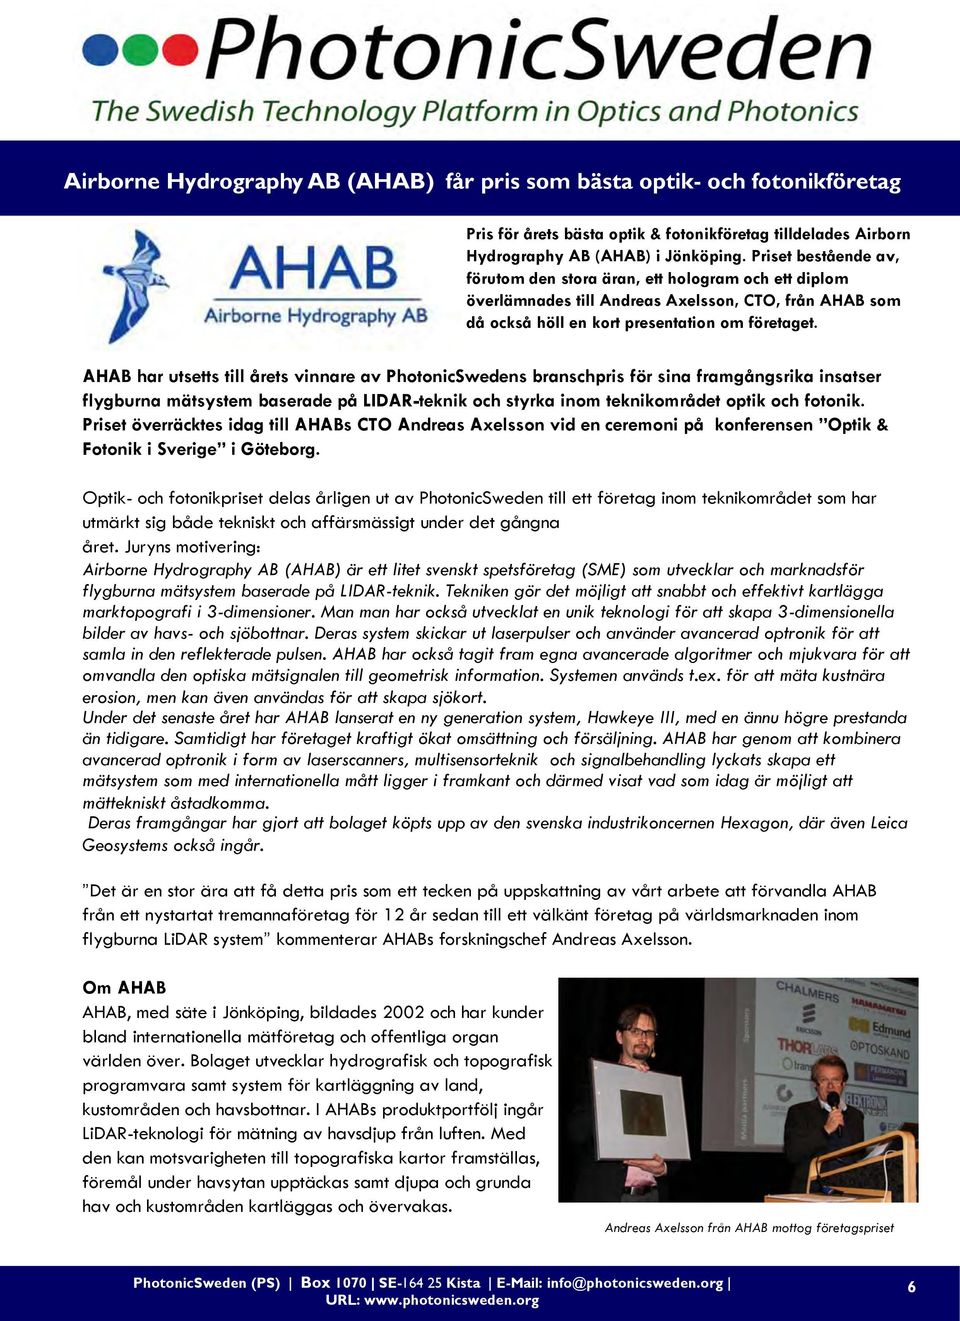 AHAB har utsetts till årets vinnare av PhotonicSwedens branschpris för sina framgångsrika insatser flygburna mätsystem baserade på LIDAR-teknik och styrka inom teknikområdet optik och fotonik.